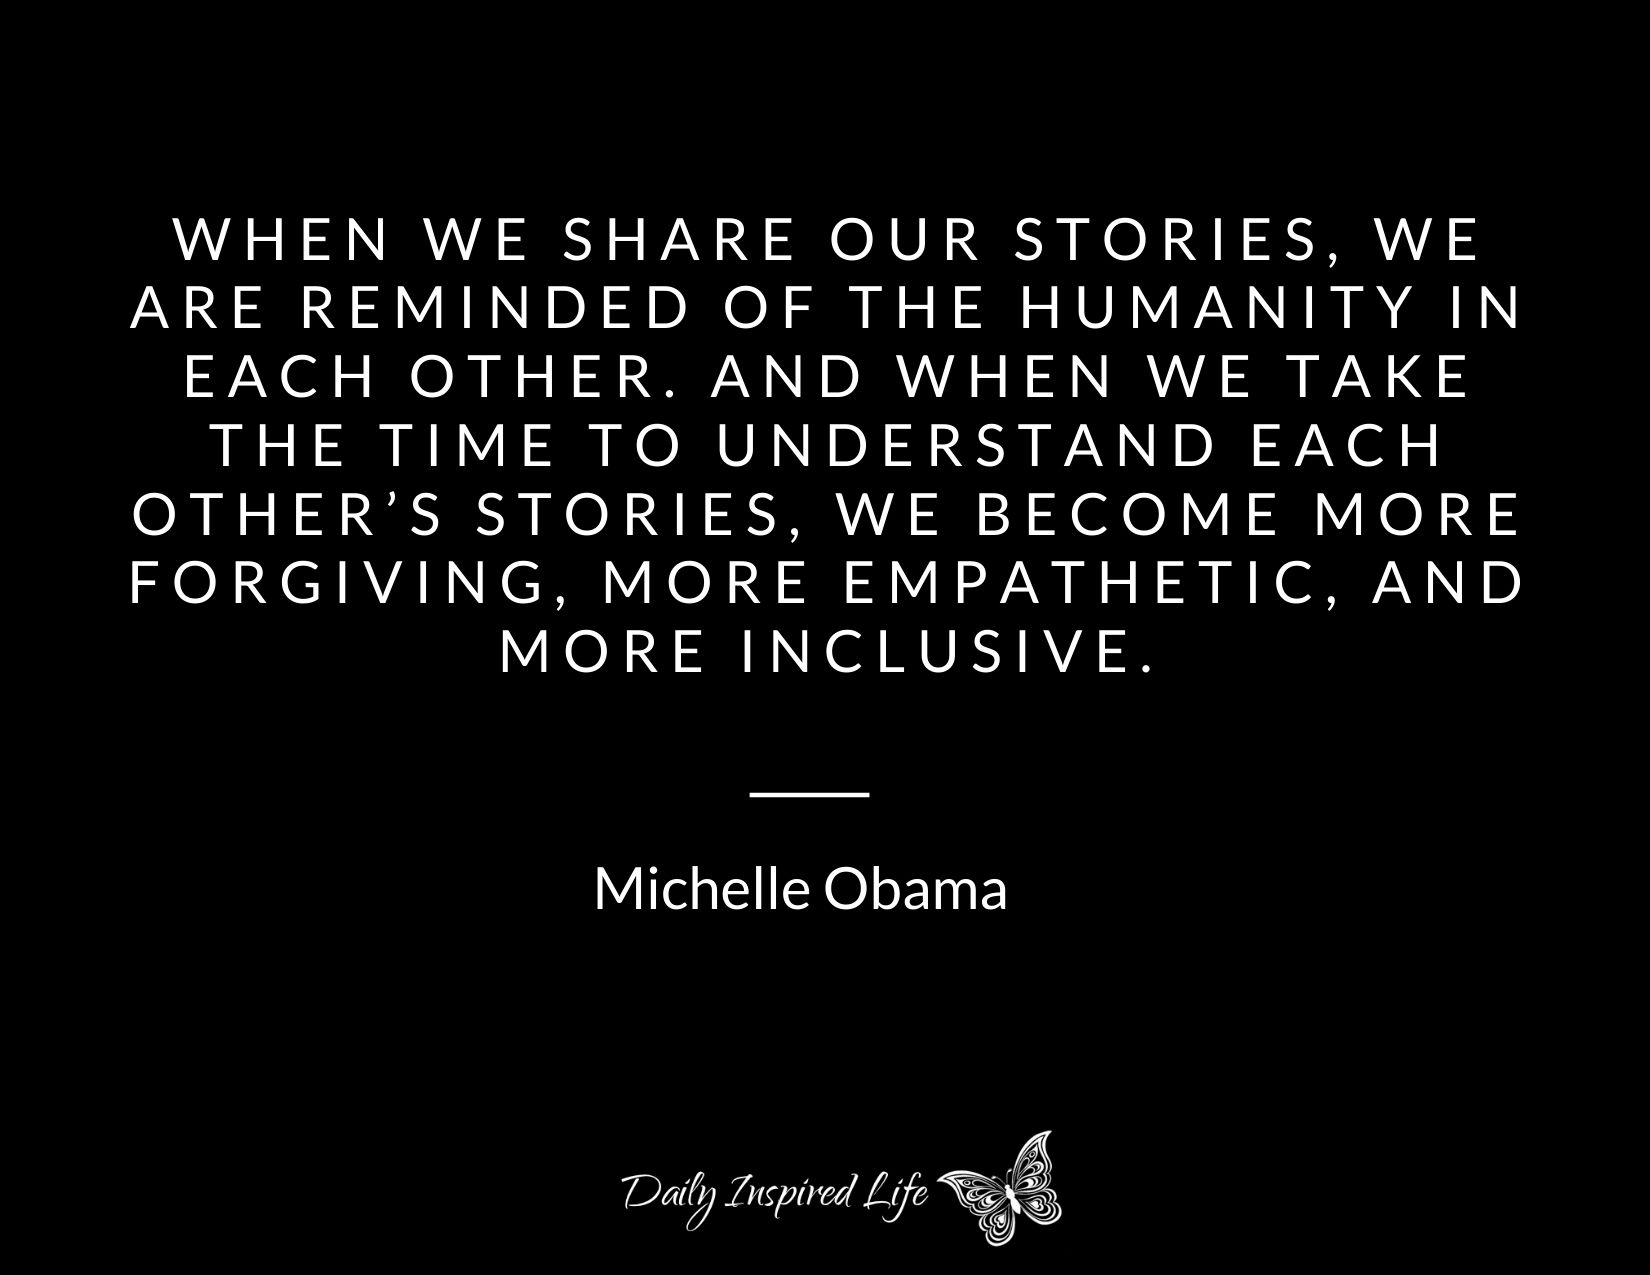 https://dailyinspiredlife.com/wp-content/uploads/2021/01/power-of-story-quote-michelle-obama.jpg